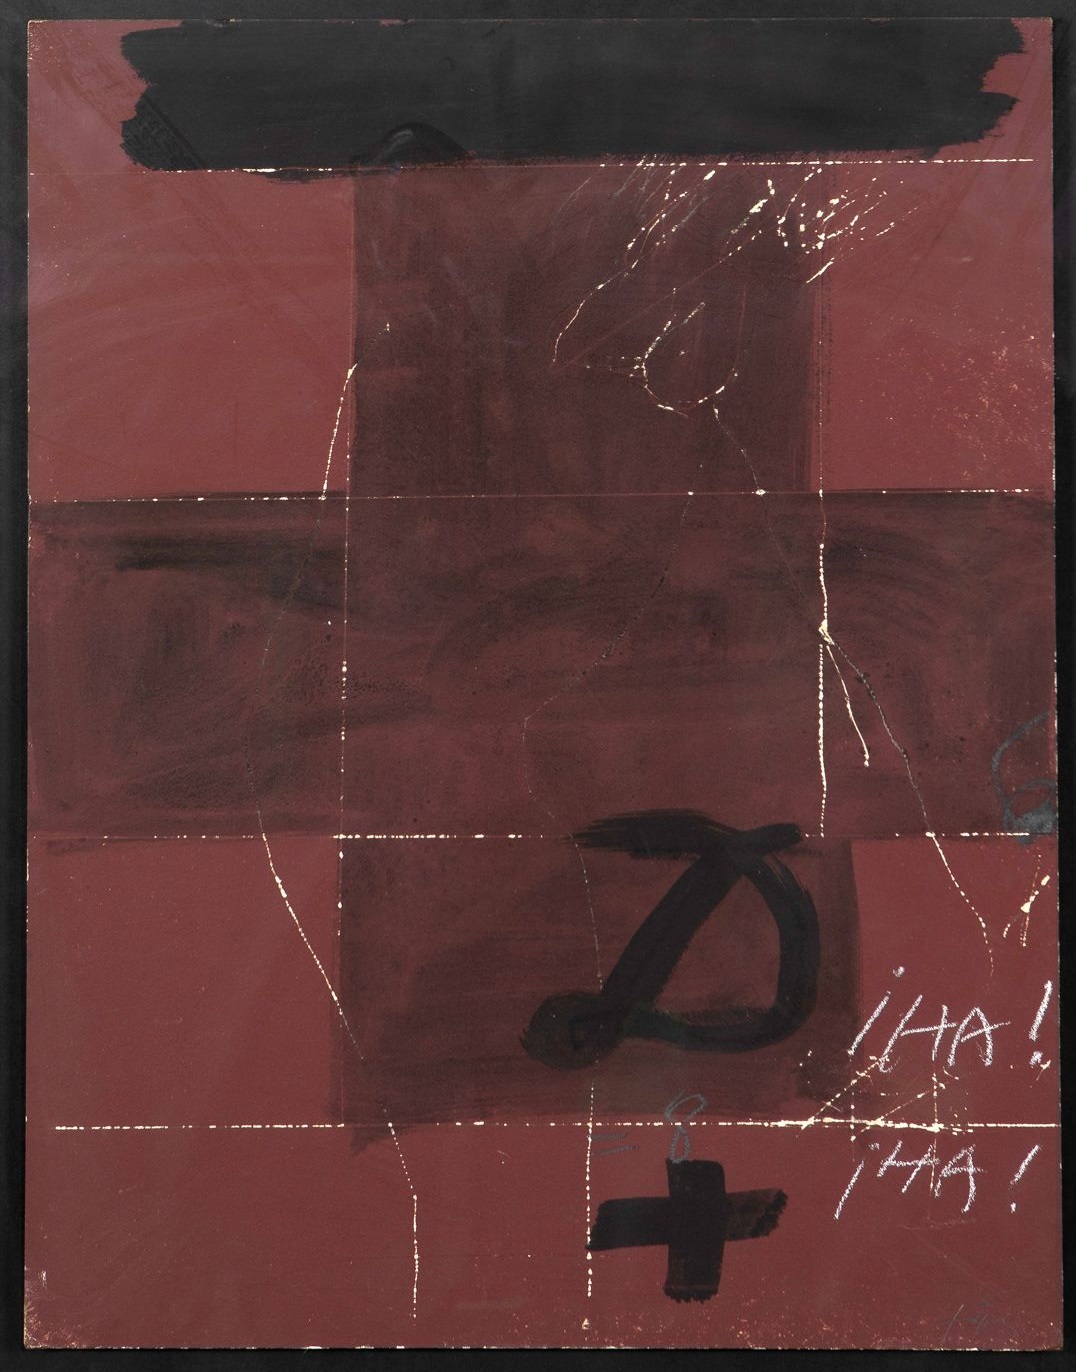 Antoni Tàpies, Cruz y signos en marrón, 1975. Salida: 27.000 euros. Remate: 30.000 euros